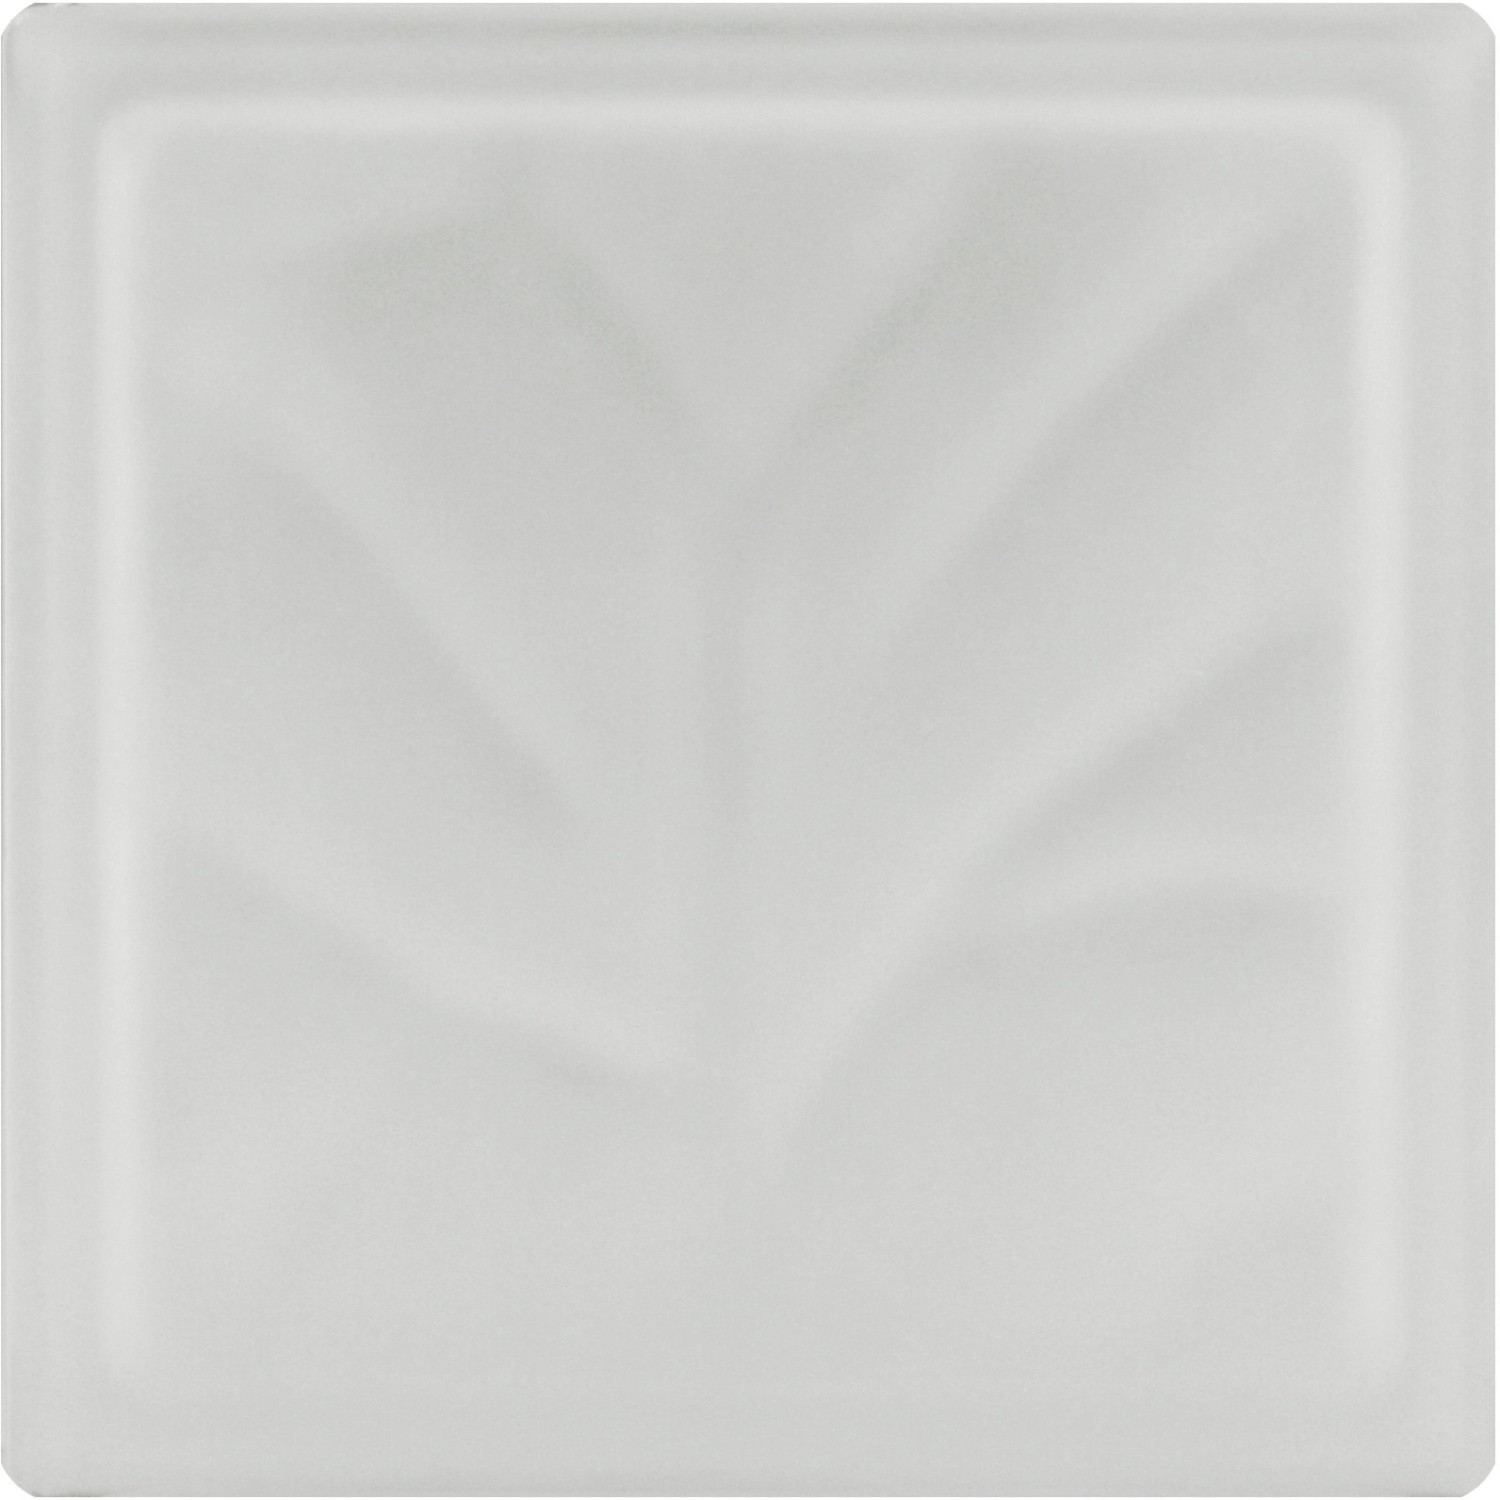 Fuchs Glasstein Wolke Weiß 19 cm x 19 cm x 8 cm 2-seitig satiniert von Fuchs Design